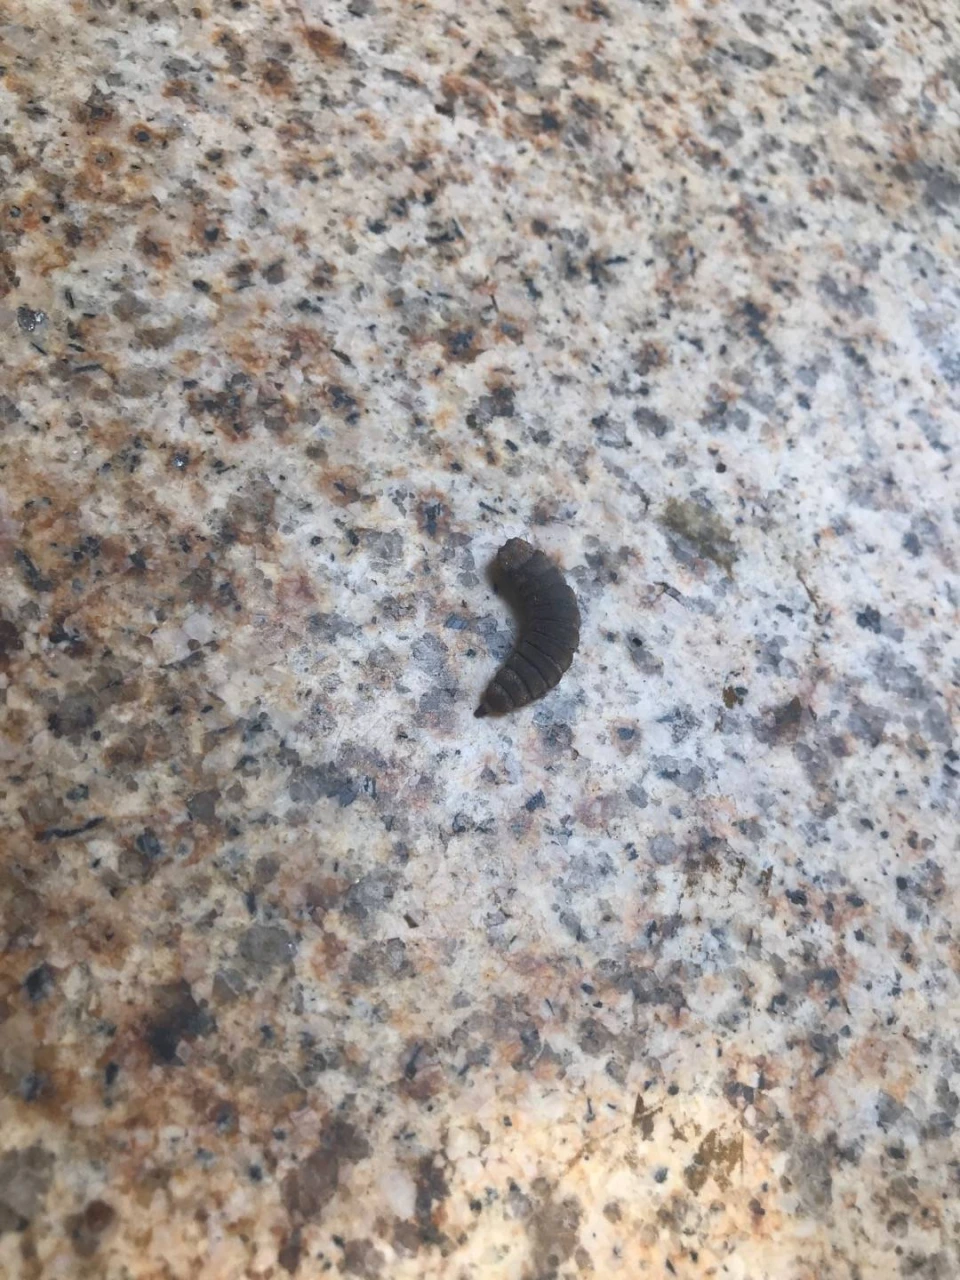 有人认识这是什么虫吗？